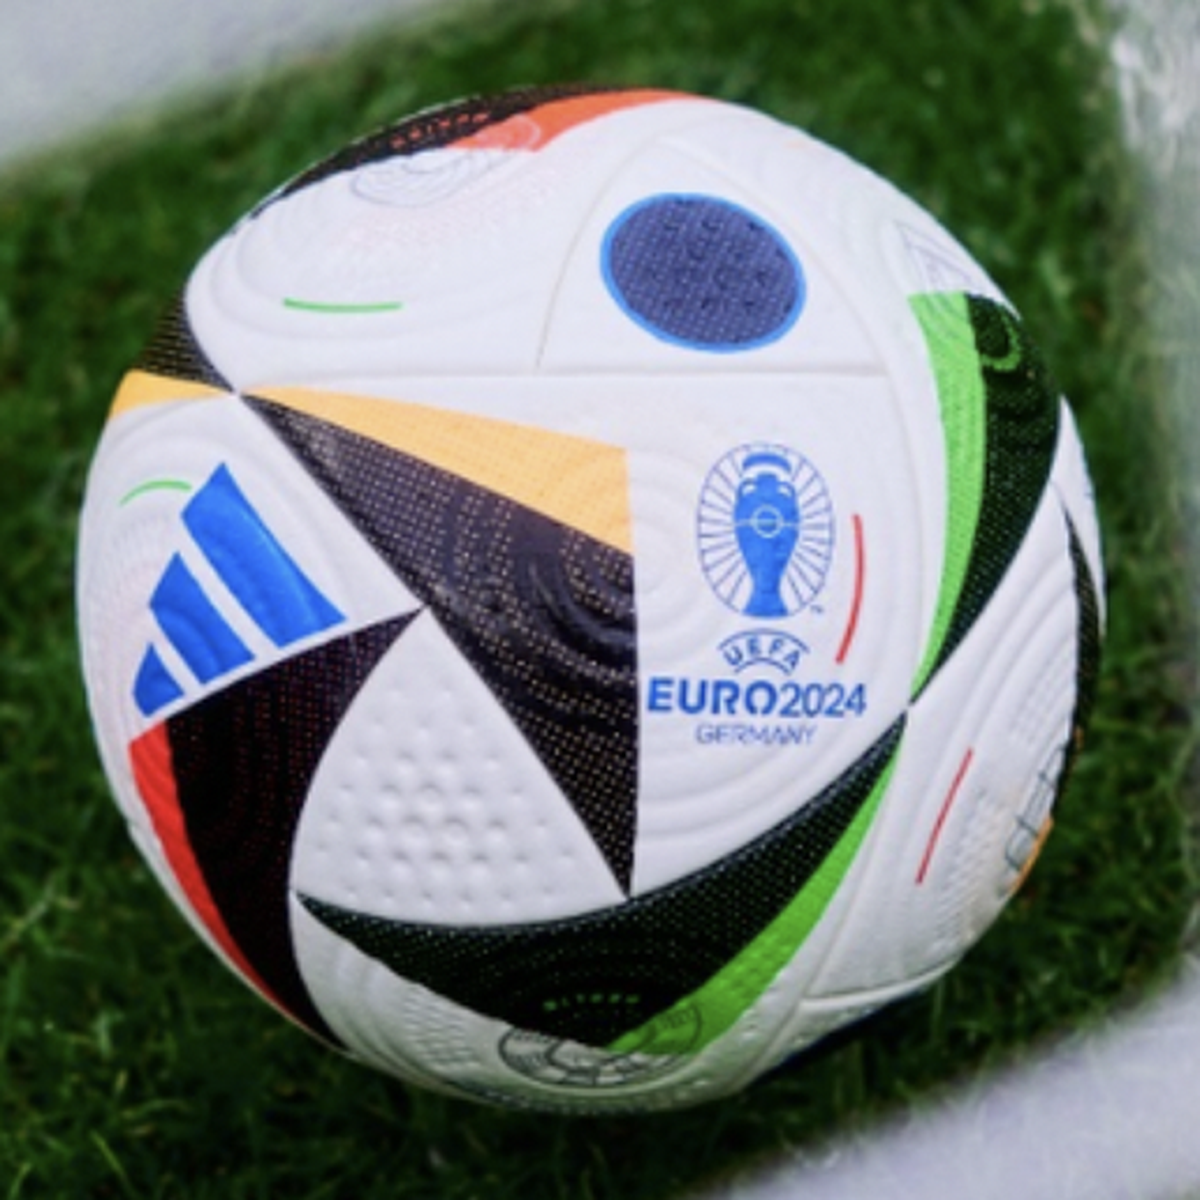 UEFA EURO 2024 - Combien de ballons de la #NationsLeague sur cette